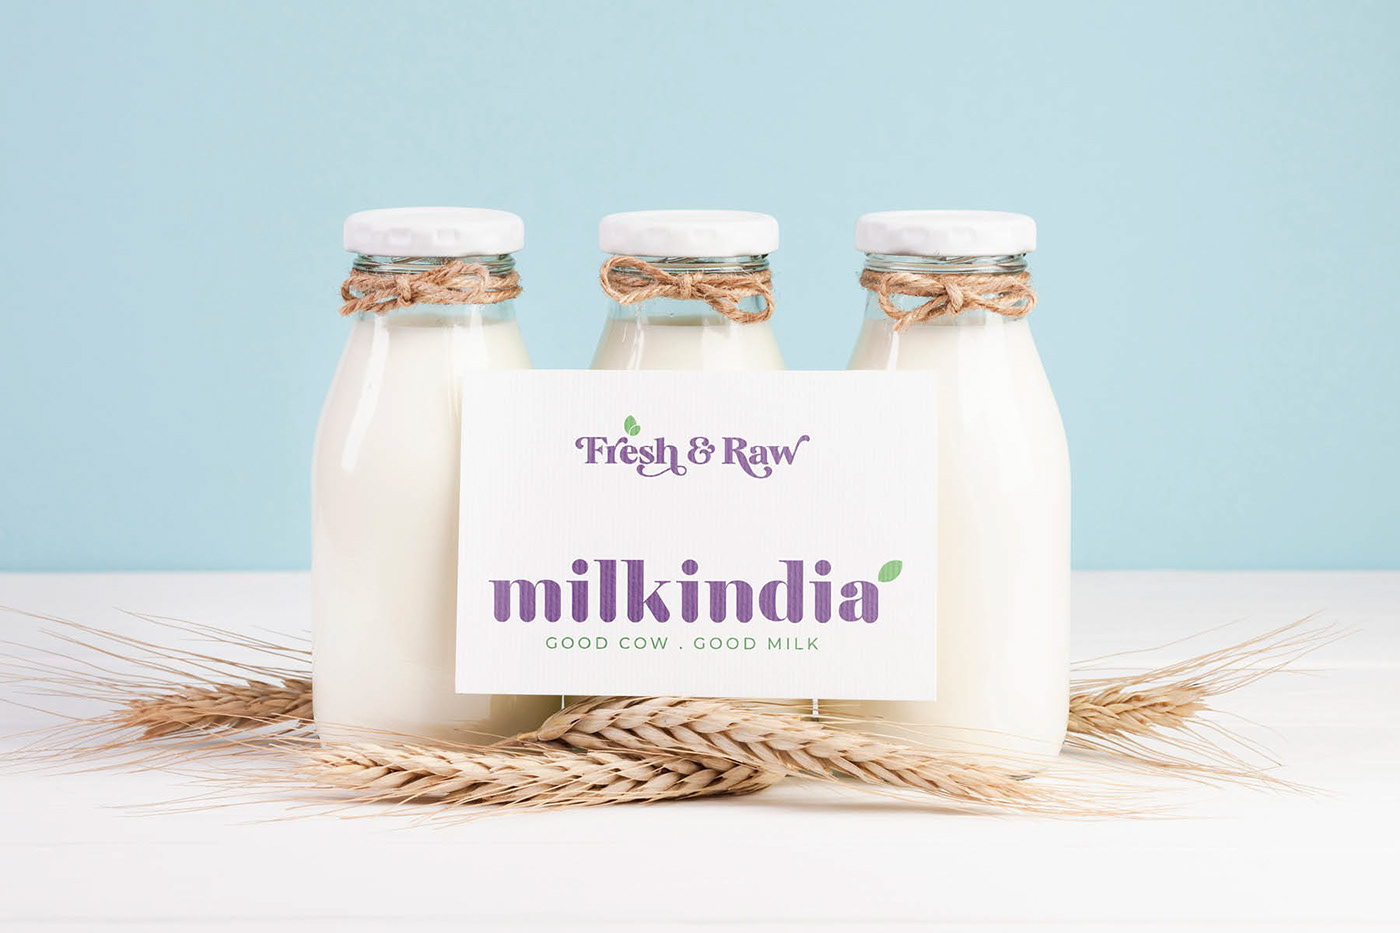 Dairy Branding dairy packaging identity desing milk branding Milk India Milk logo design milk packaging packaging design yoghurt branding Yoghurt Packaging